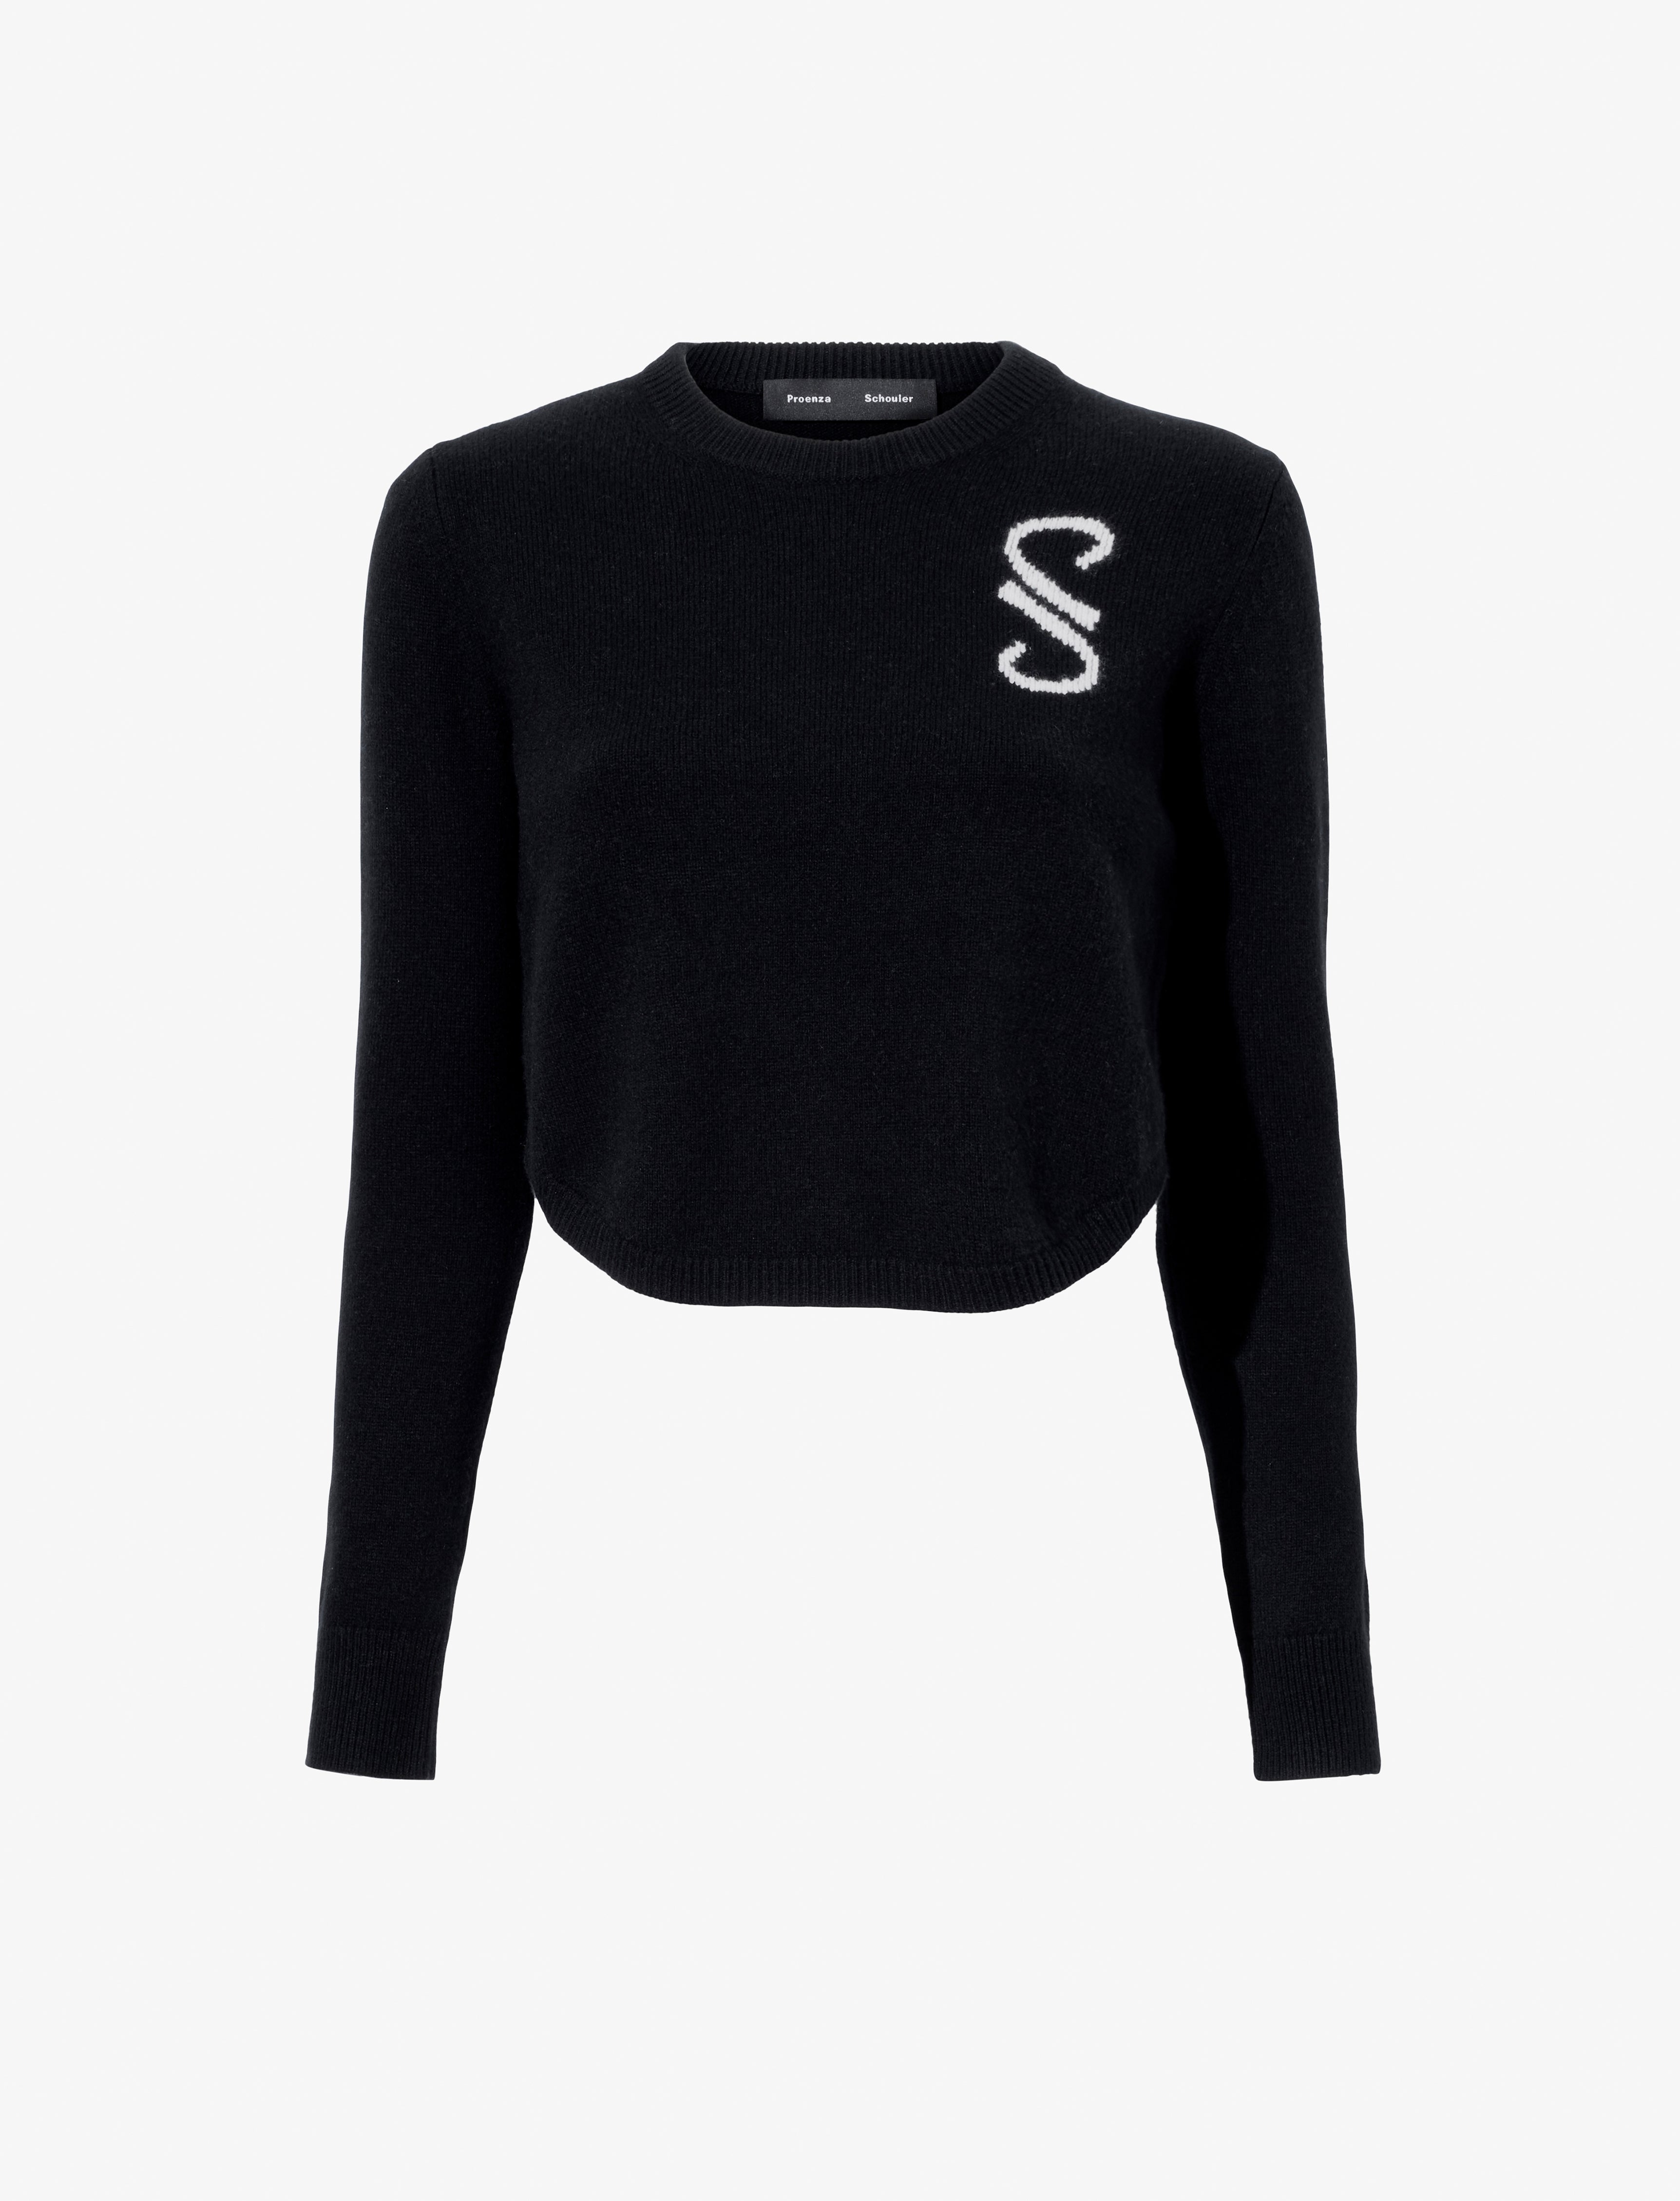 Stella Monogram Sweater in Cashmere Jacquard – Proenza Schouler